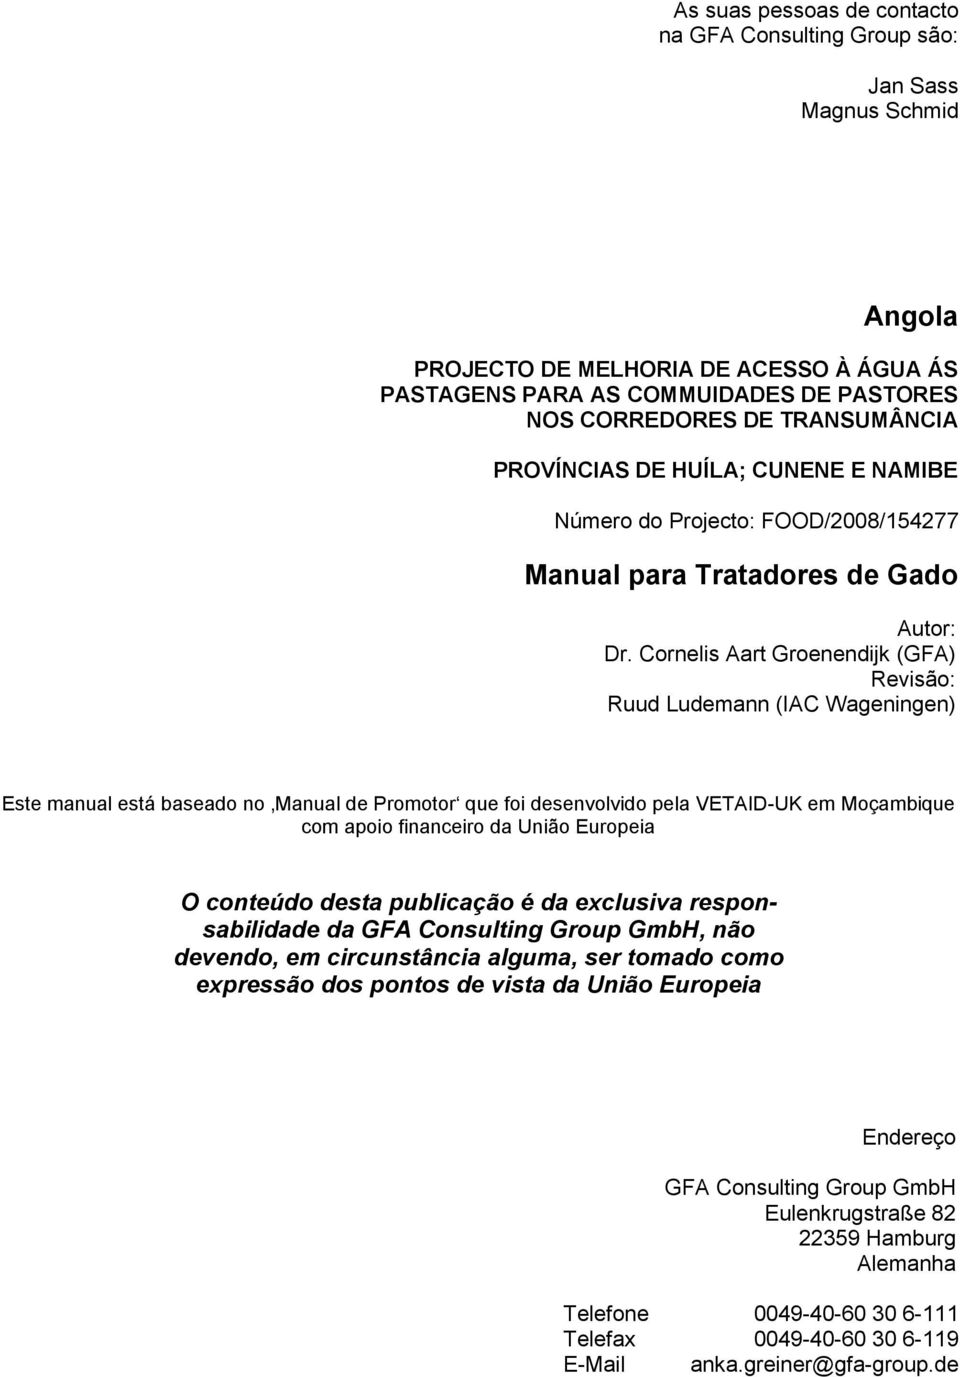 Cornelis Aart Groenendijk (GFA) Revisão: Ruud Ludemann (IAC Wageningen) Este manual está baseado no Manual de Promotor que foi desenvolvido pela VETAID-UK em Moçambique com apoio financeiro da União